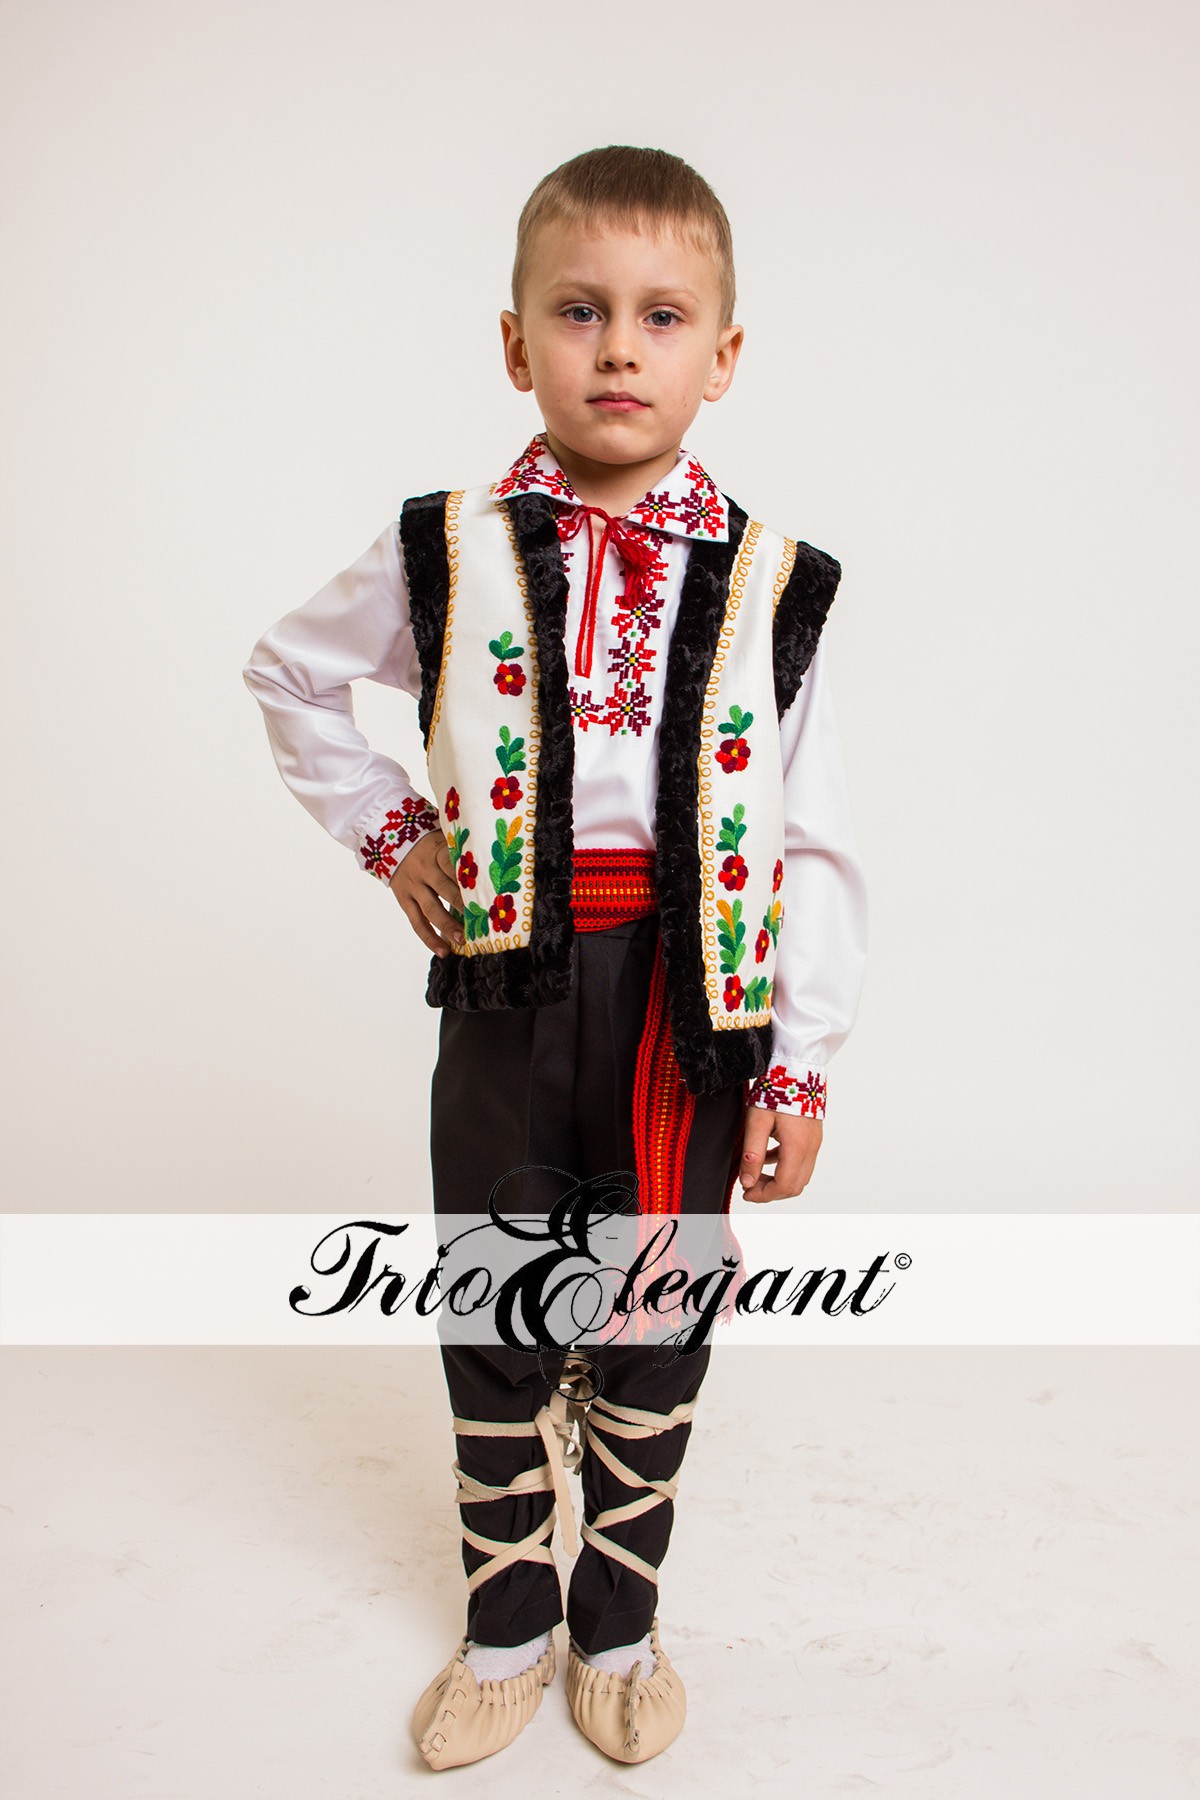 Classroom gallon Misleading Costume Naţionale Moldovenești pentru copii și maturi în chirie sau vînzare  - Trioelegant